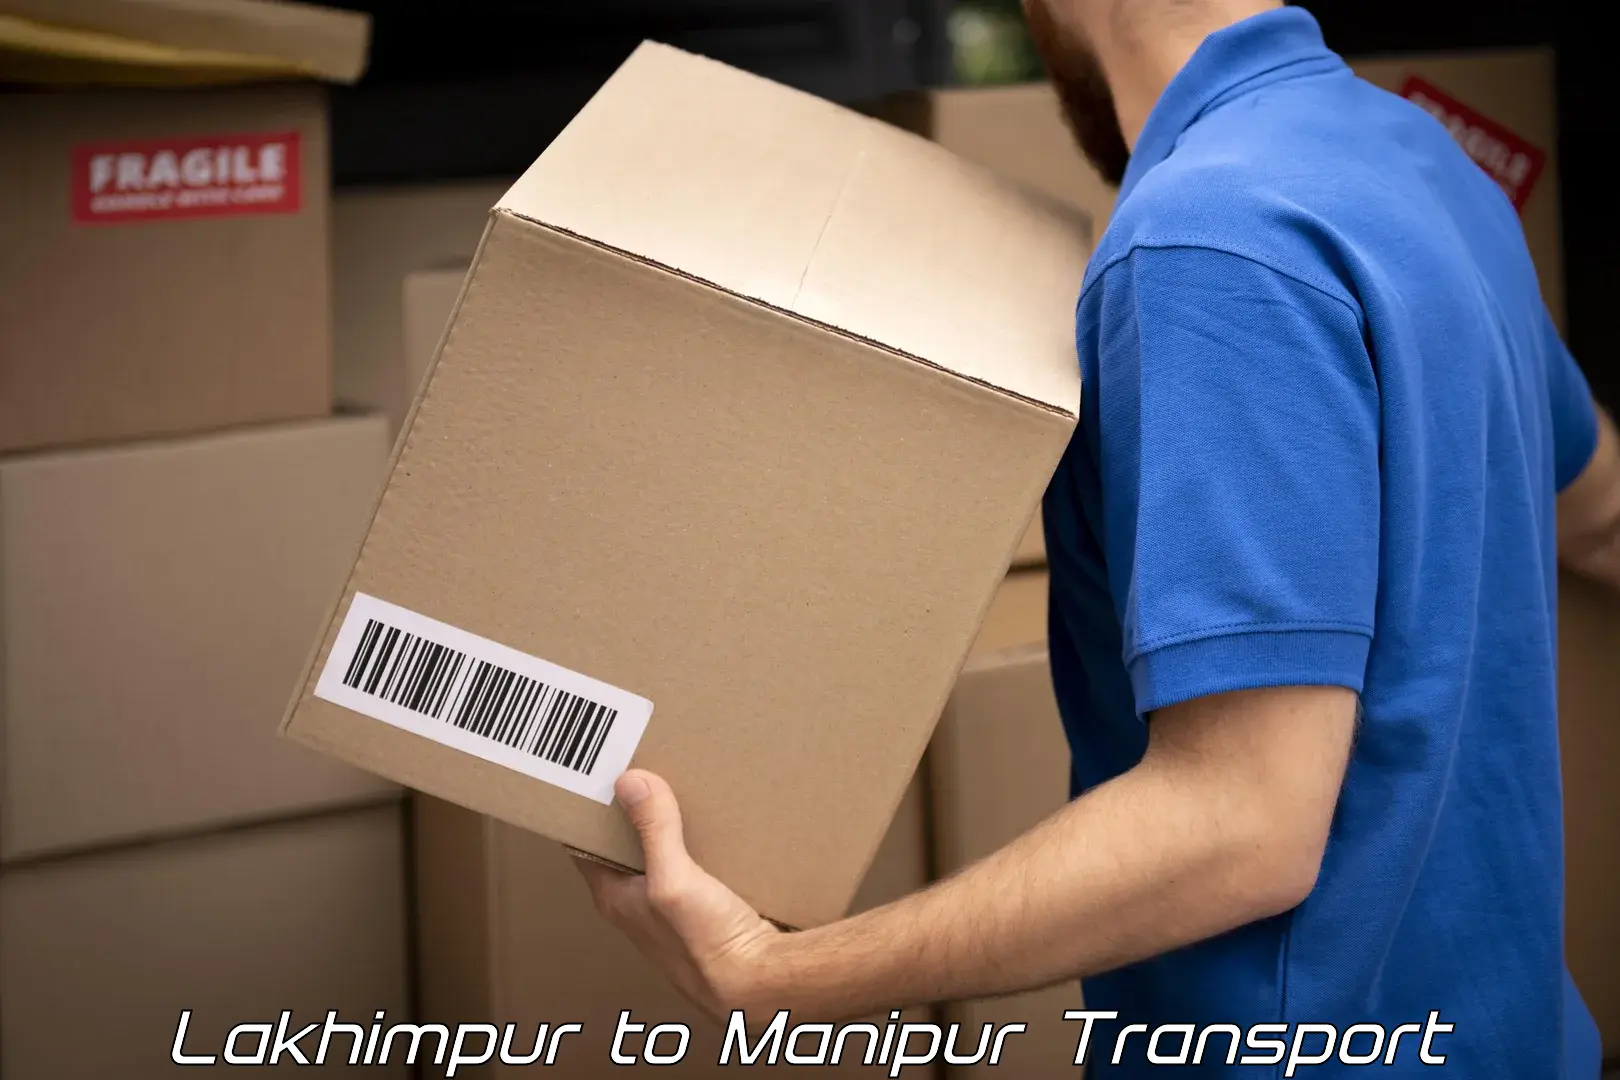 Pick up transport service Lakhimpur to Manipur